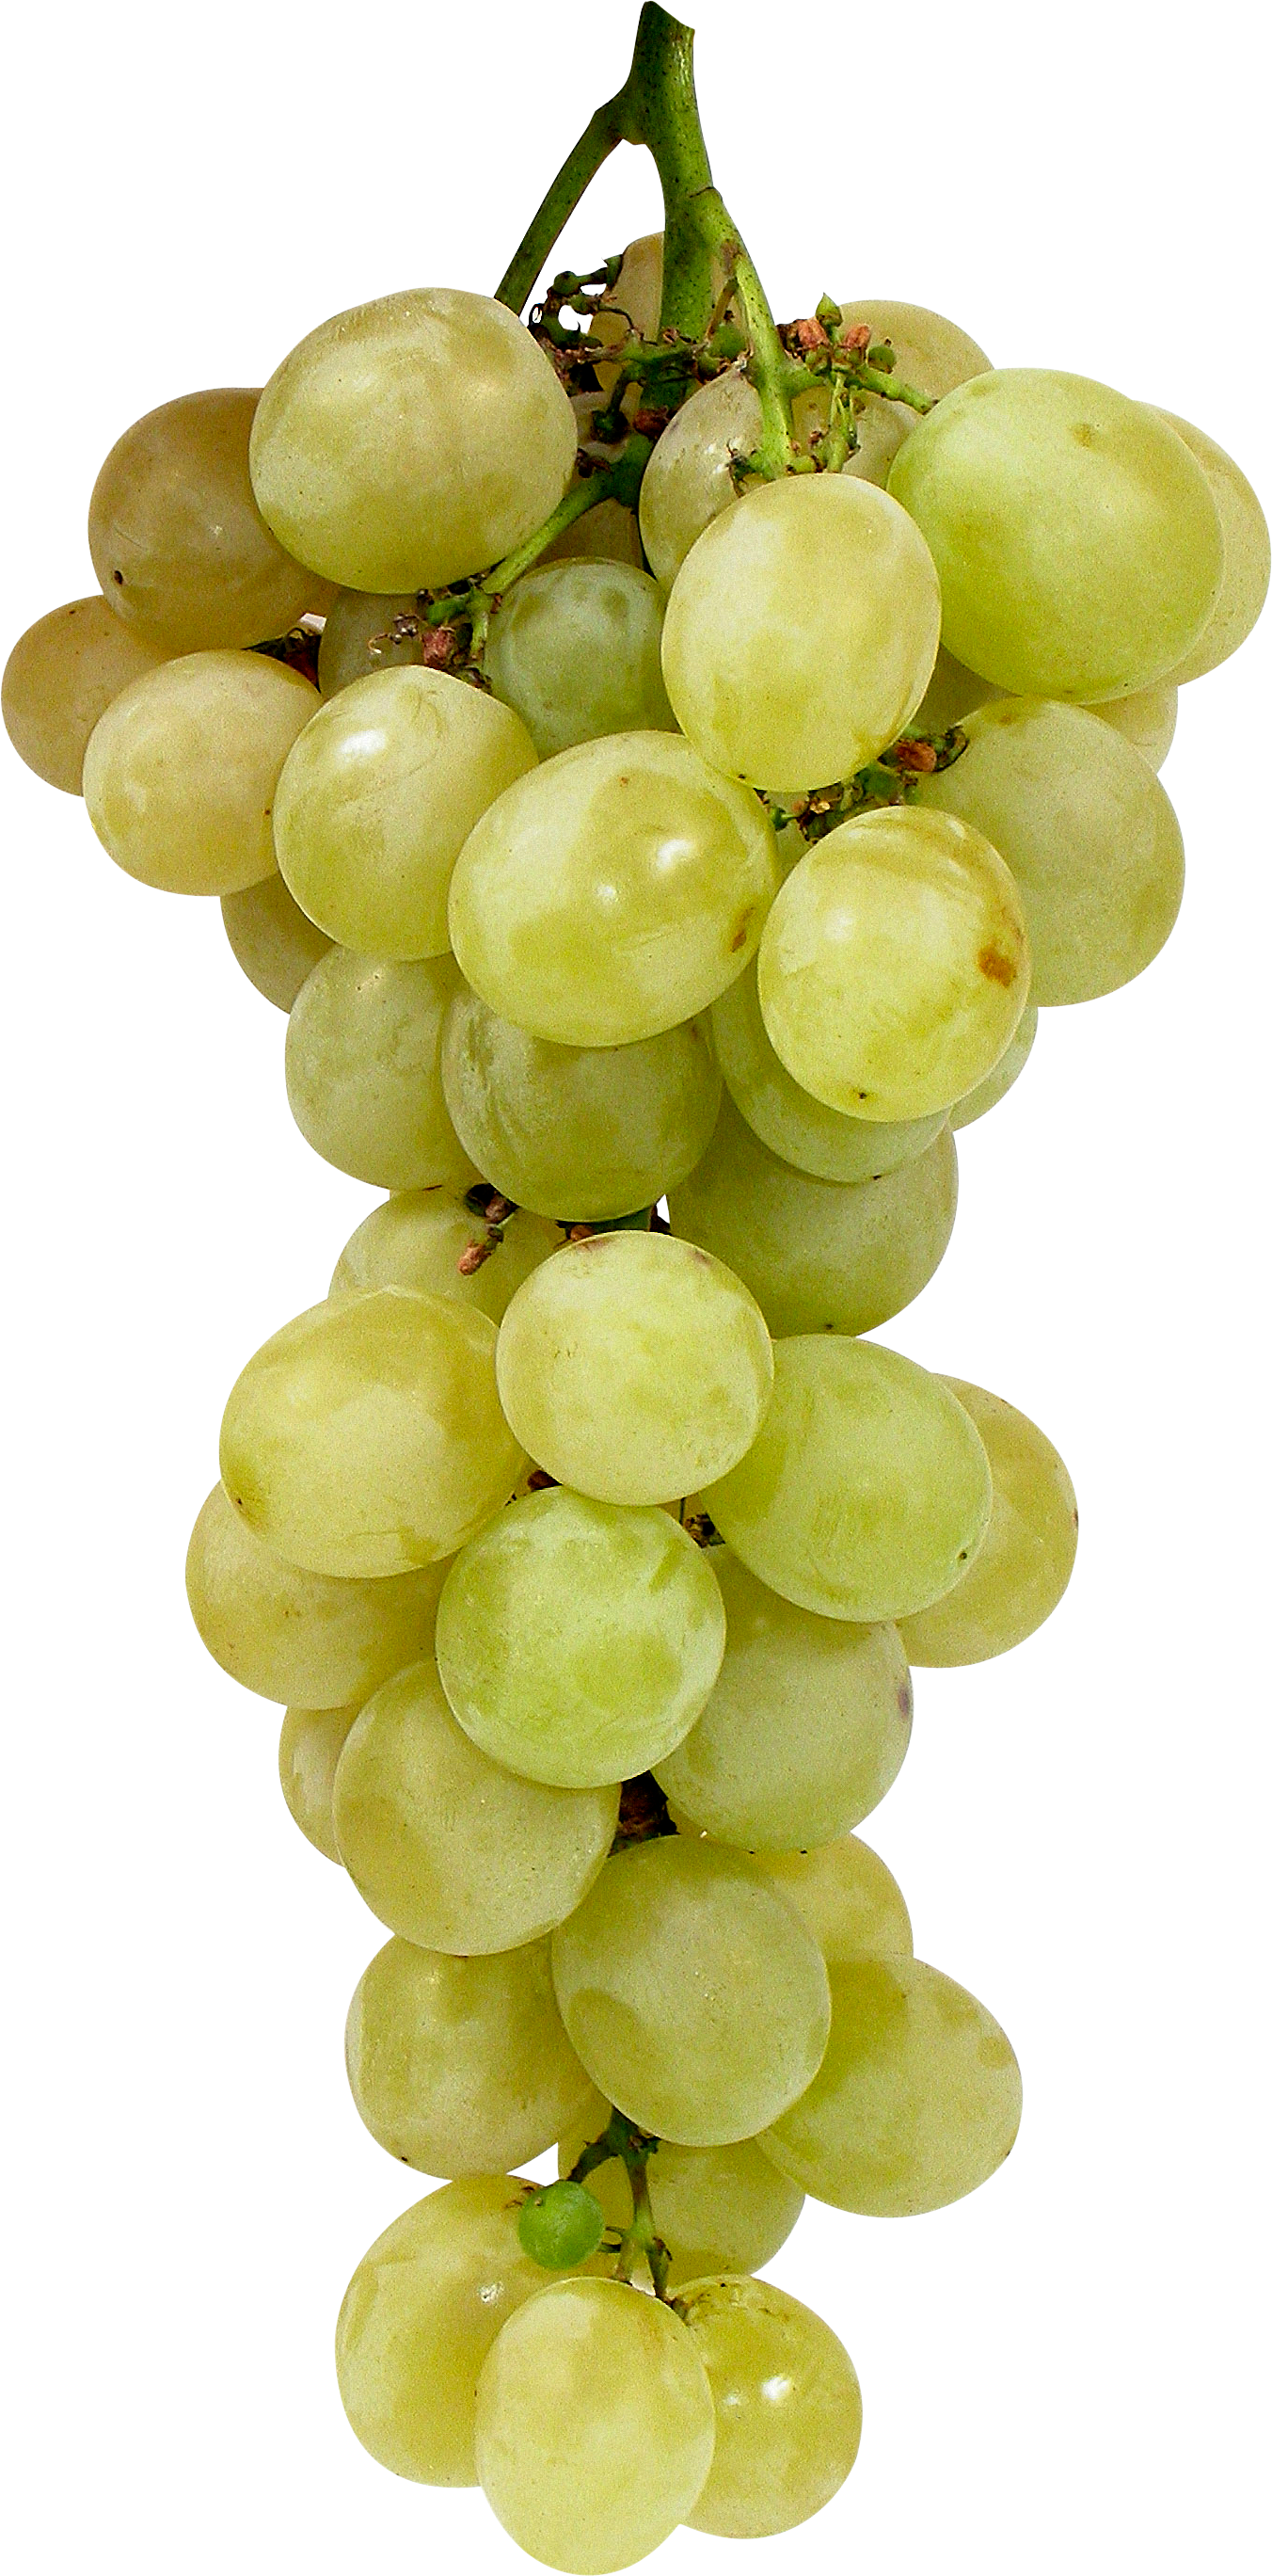 Grapes PNG Image